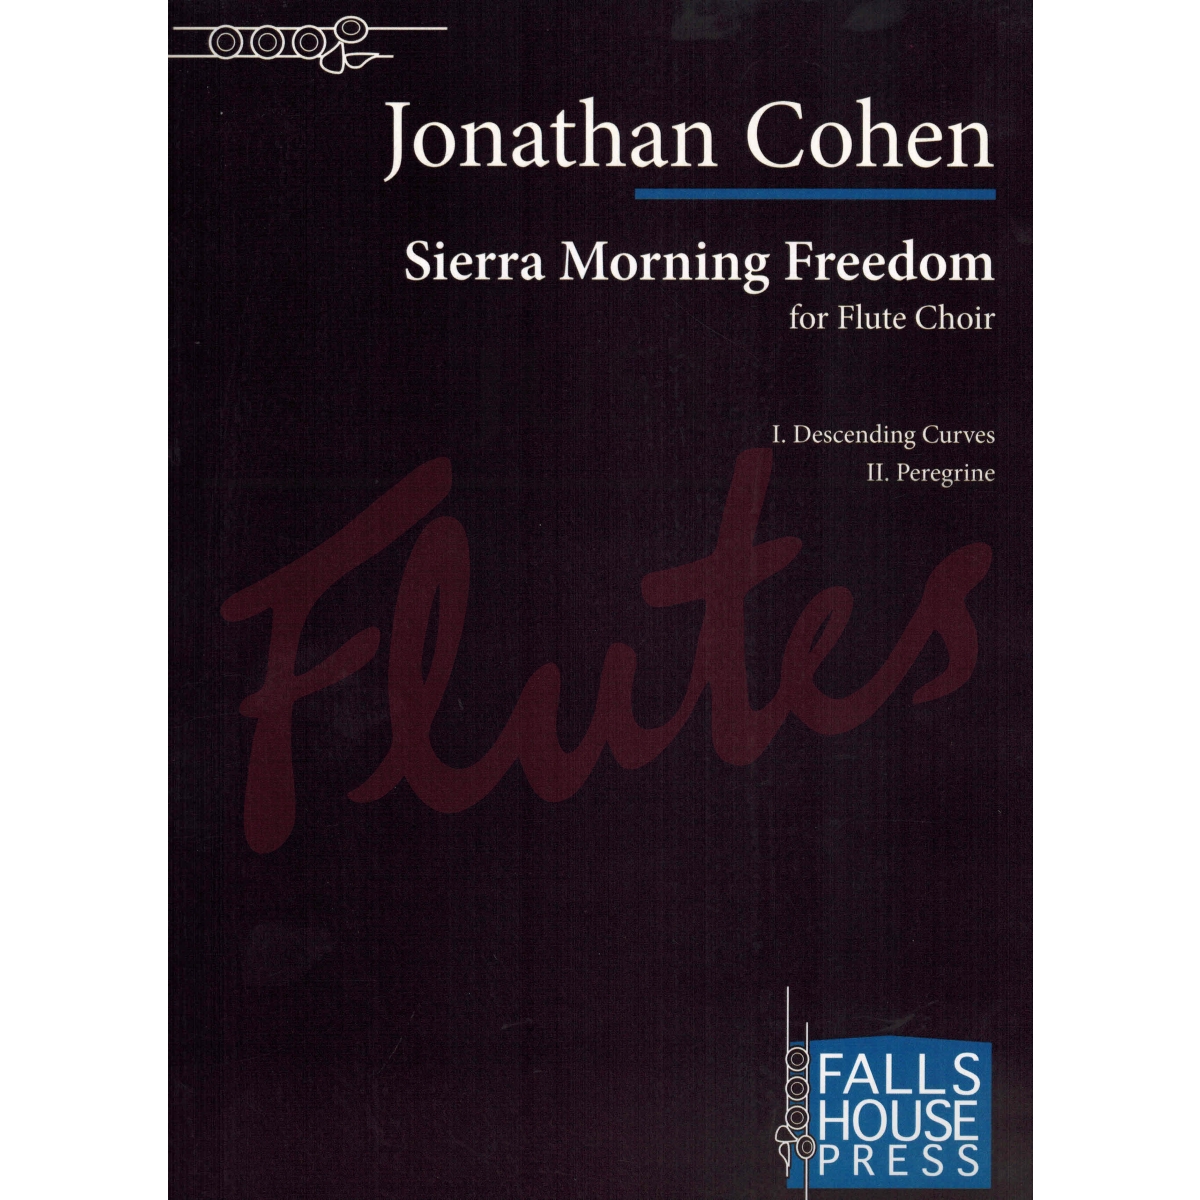 Sierra Morning Freedom for Flute Choir